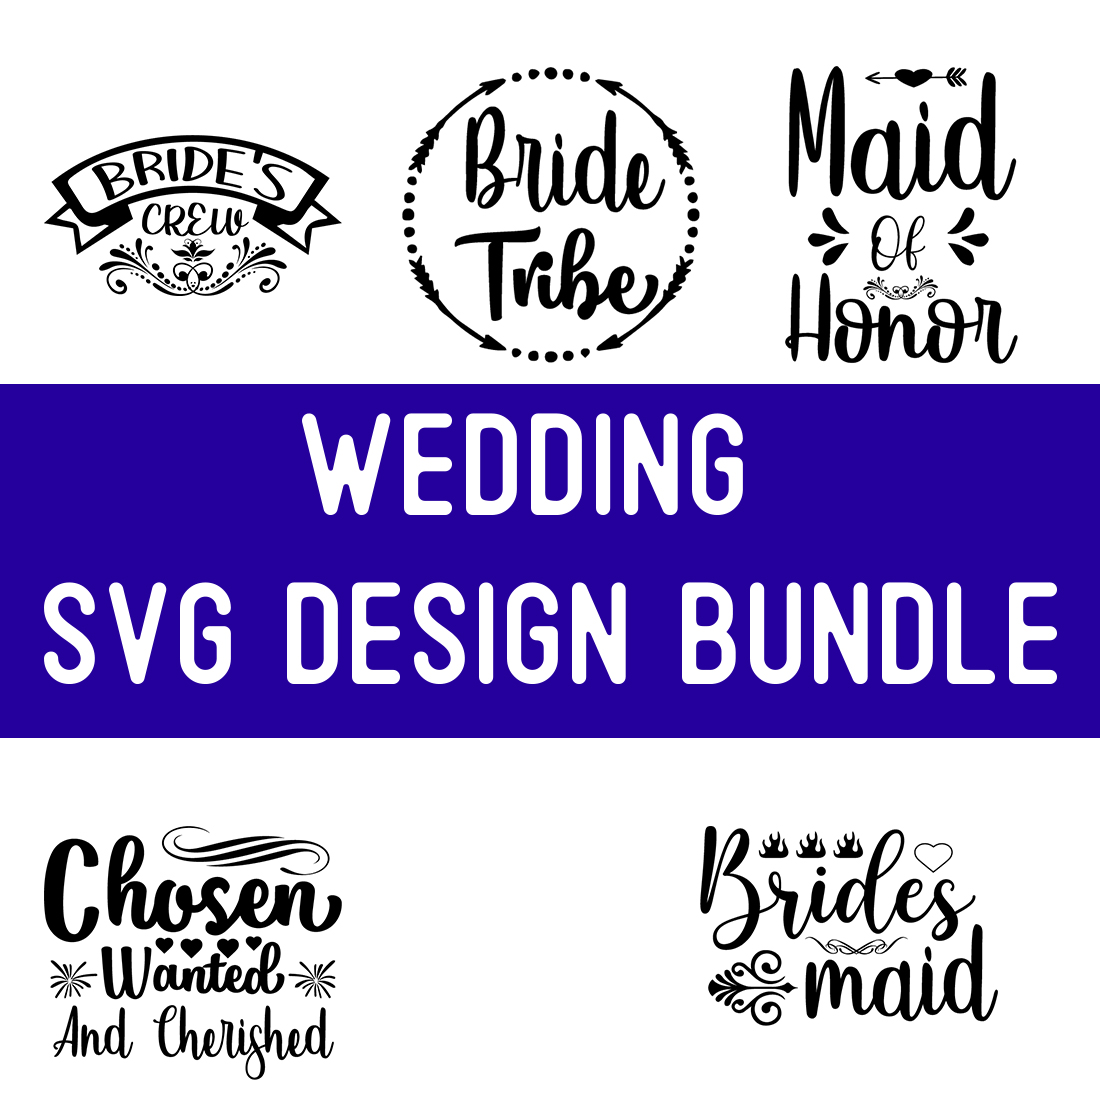 wedding SVG Design Bundle cover image.